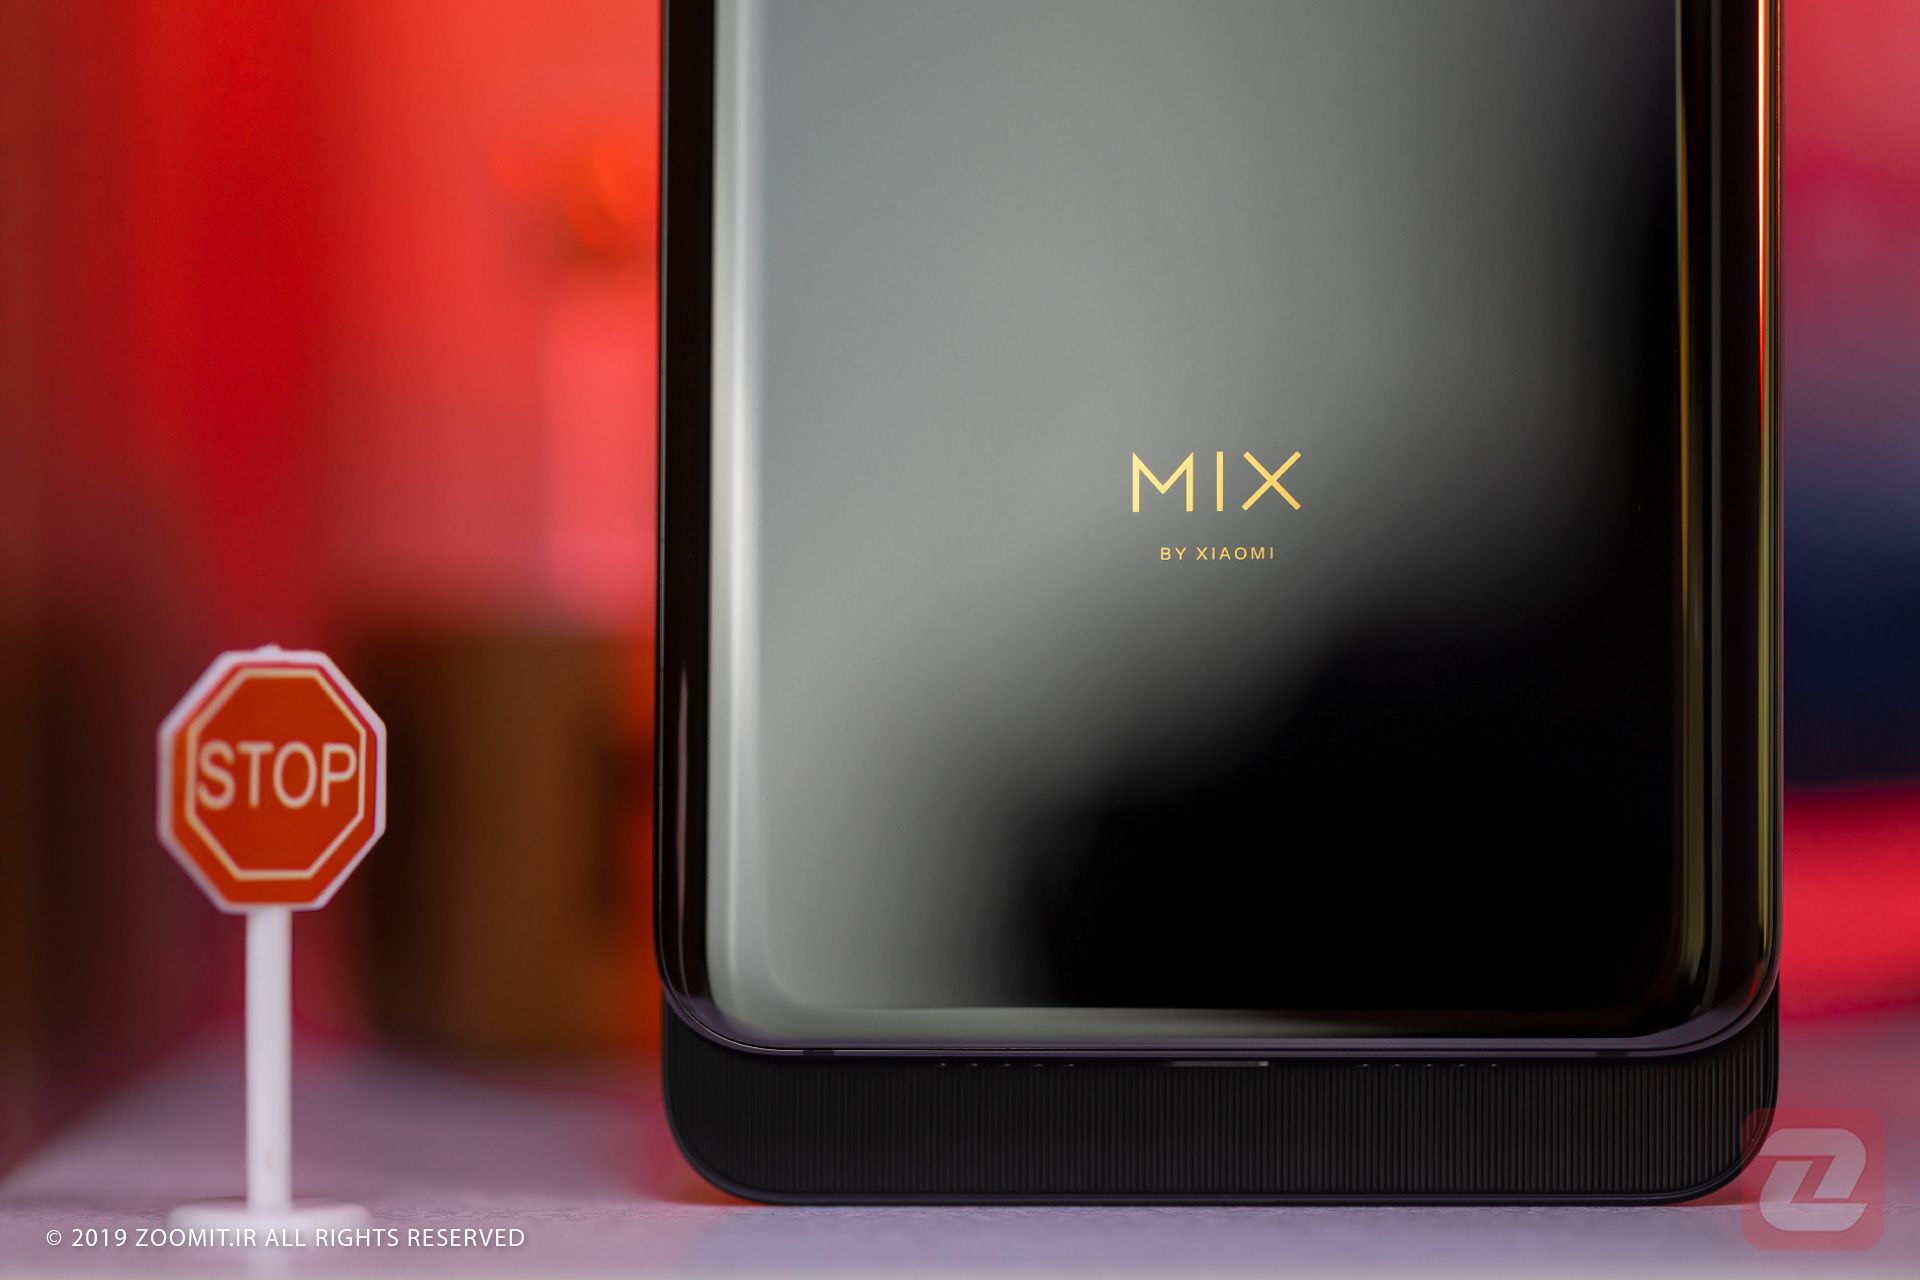 شیائومی می میکس 3 / Xiaomi Mi Mix 3